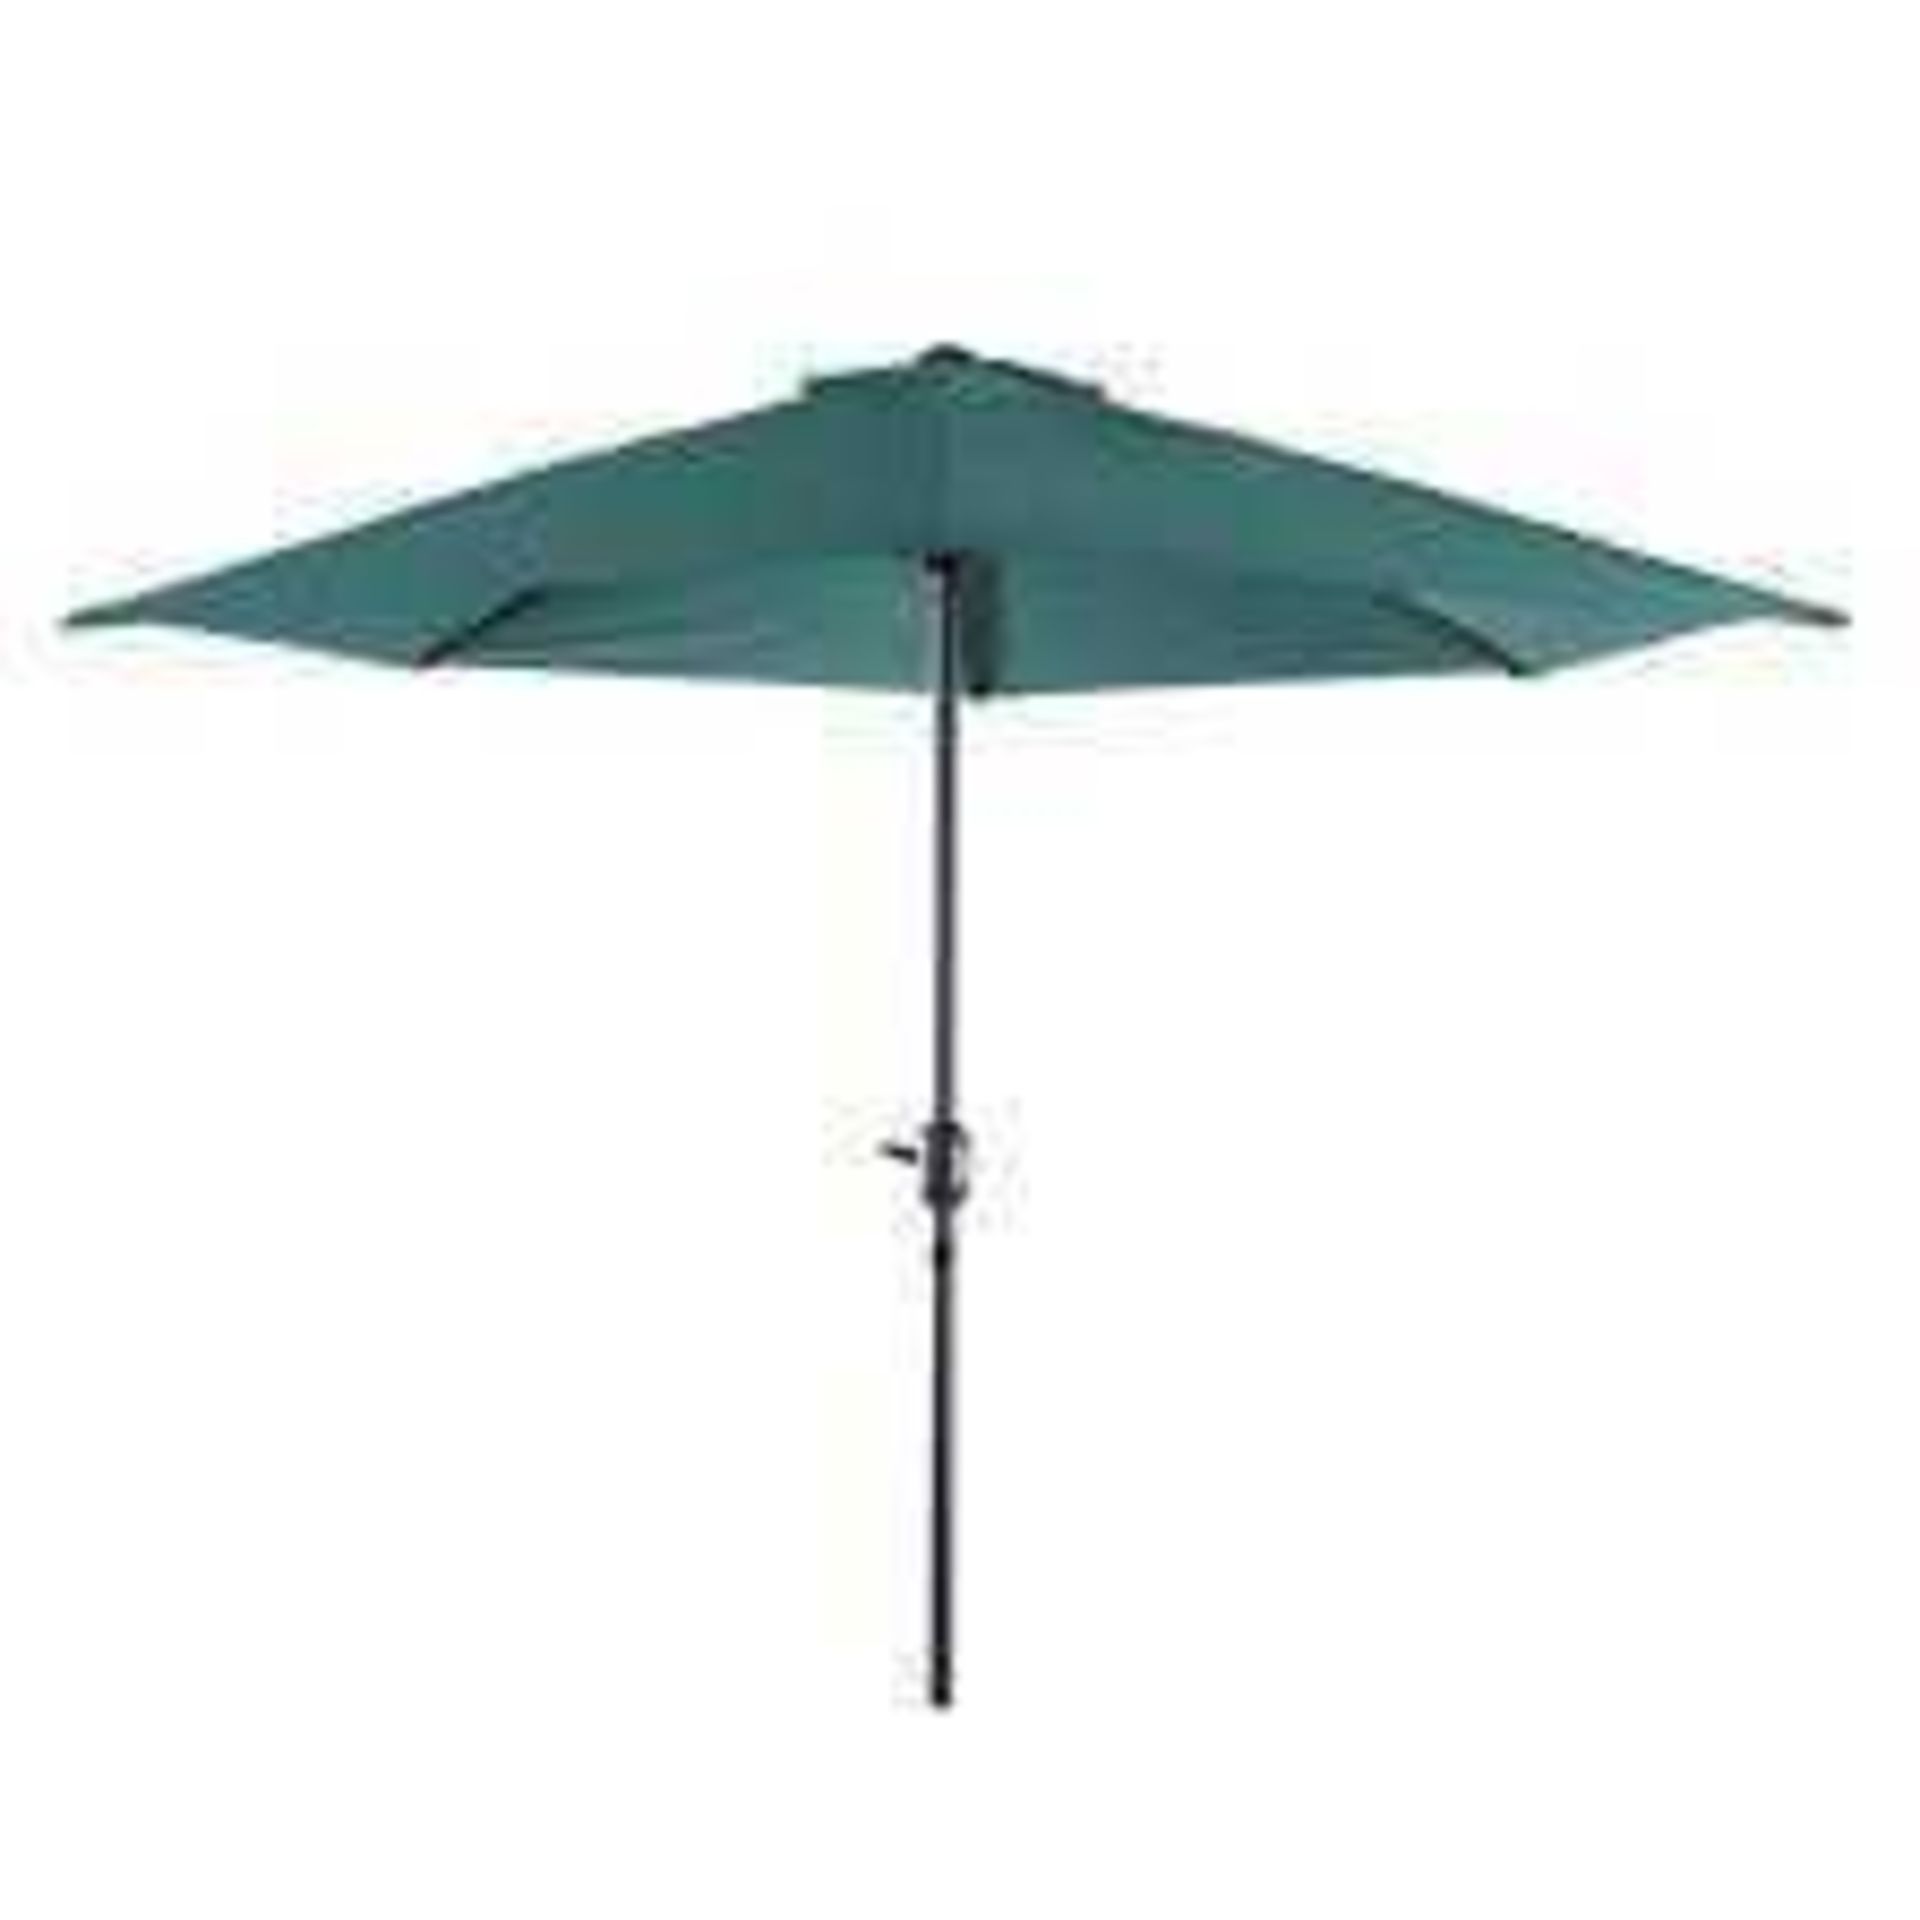 RRP £1400 Boxed Freeport Park Outdoor Umbrella Parasol